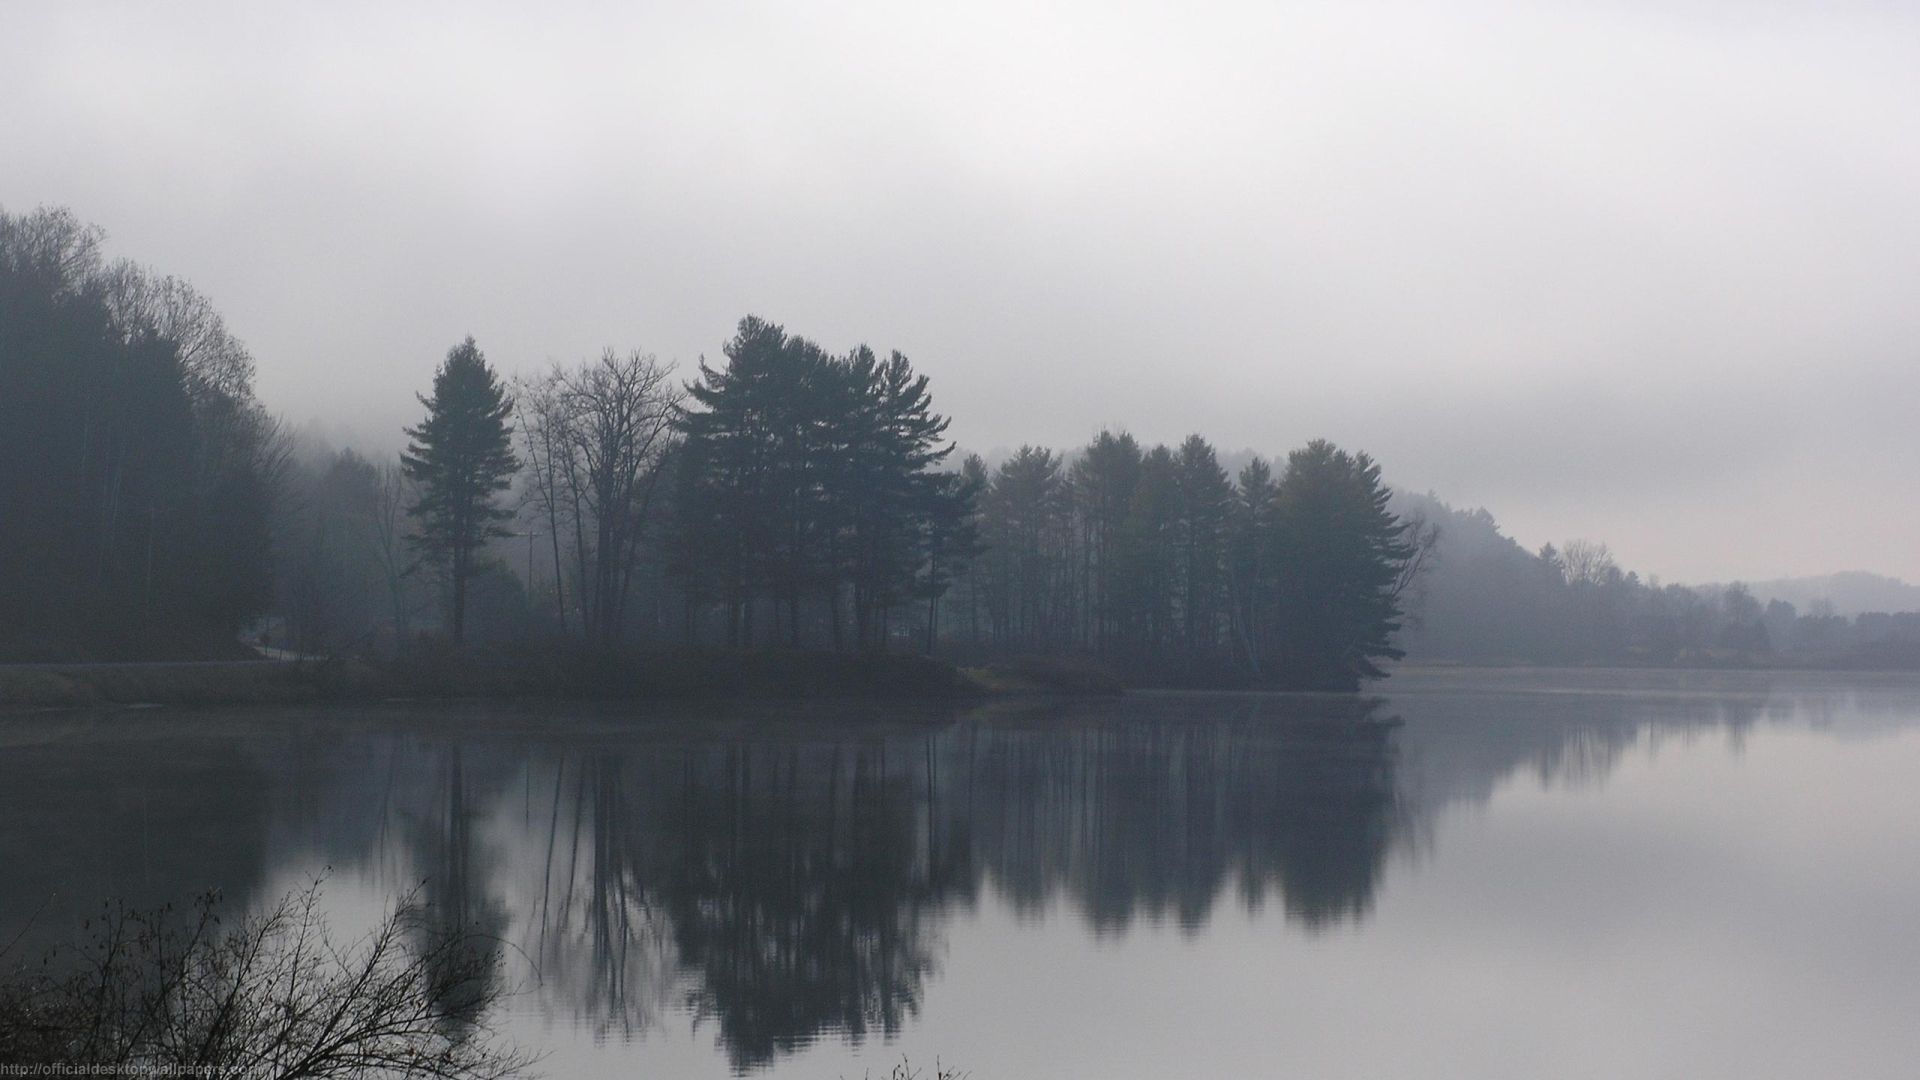 landscapes, nature, fog - desktop wallpaper